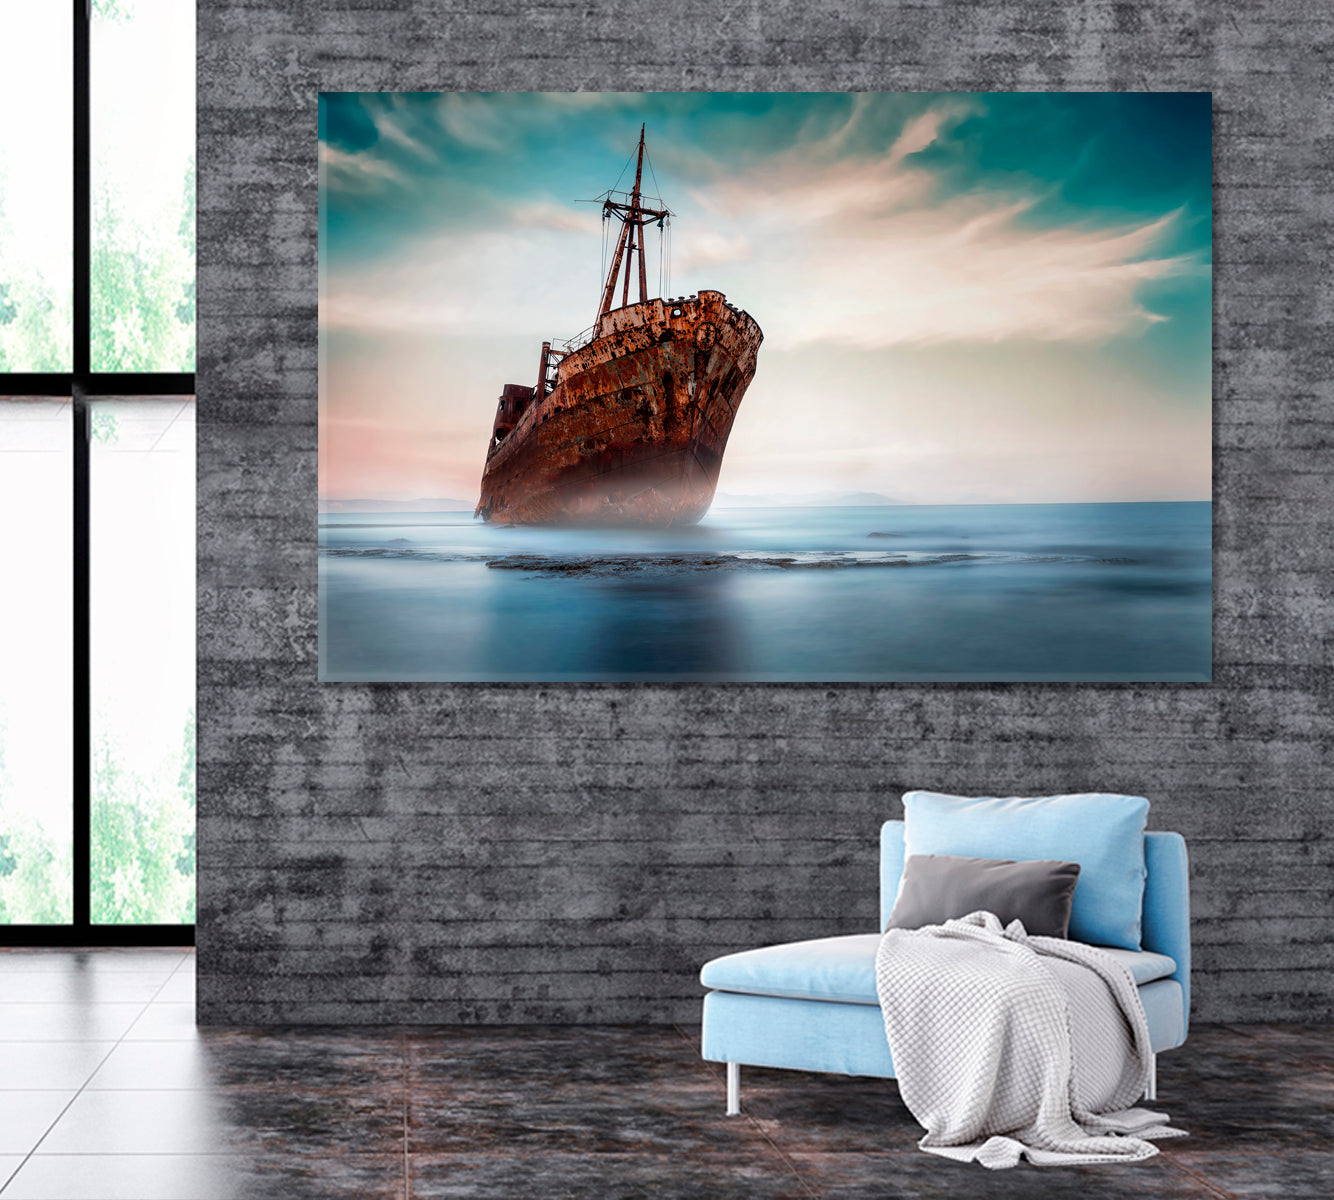 Shipwreck on Gythio Beach Greece Canvas Print ArtLexy 1 Panel 24"x16" inches 